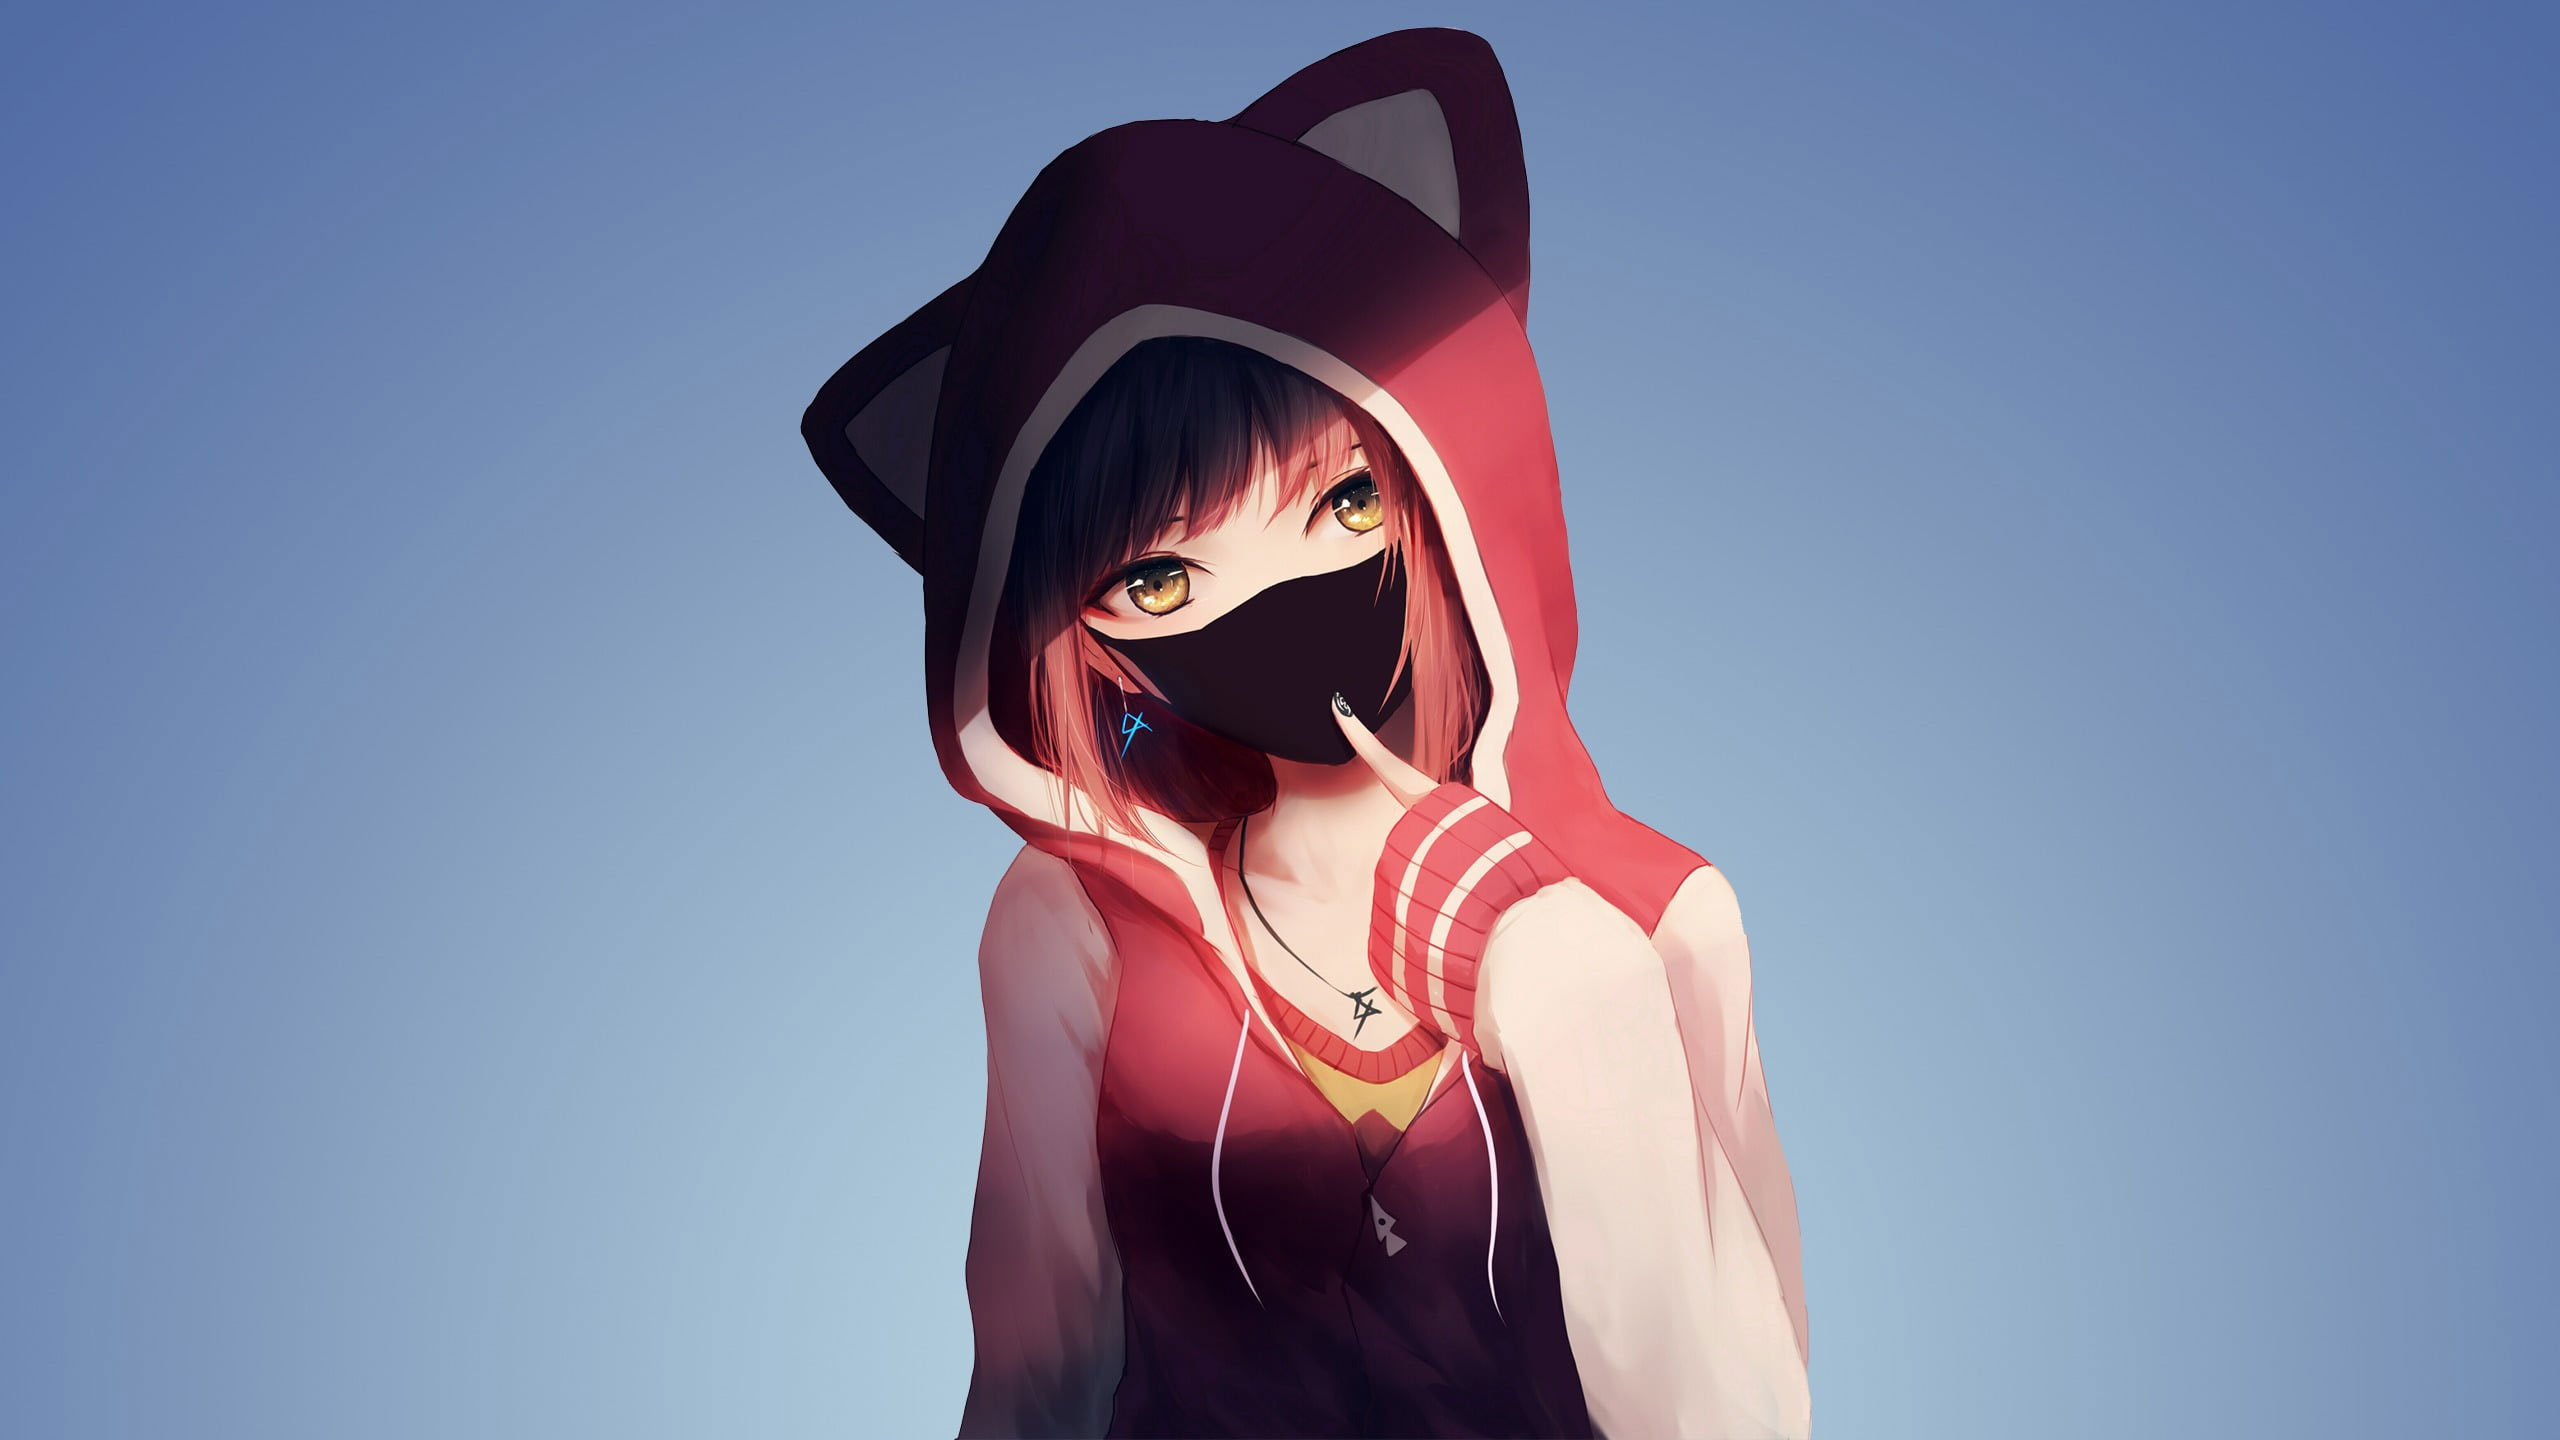 Girl wearing cat ear hoodie anime illustration wallpaper, anime girls, MX shimmer